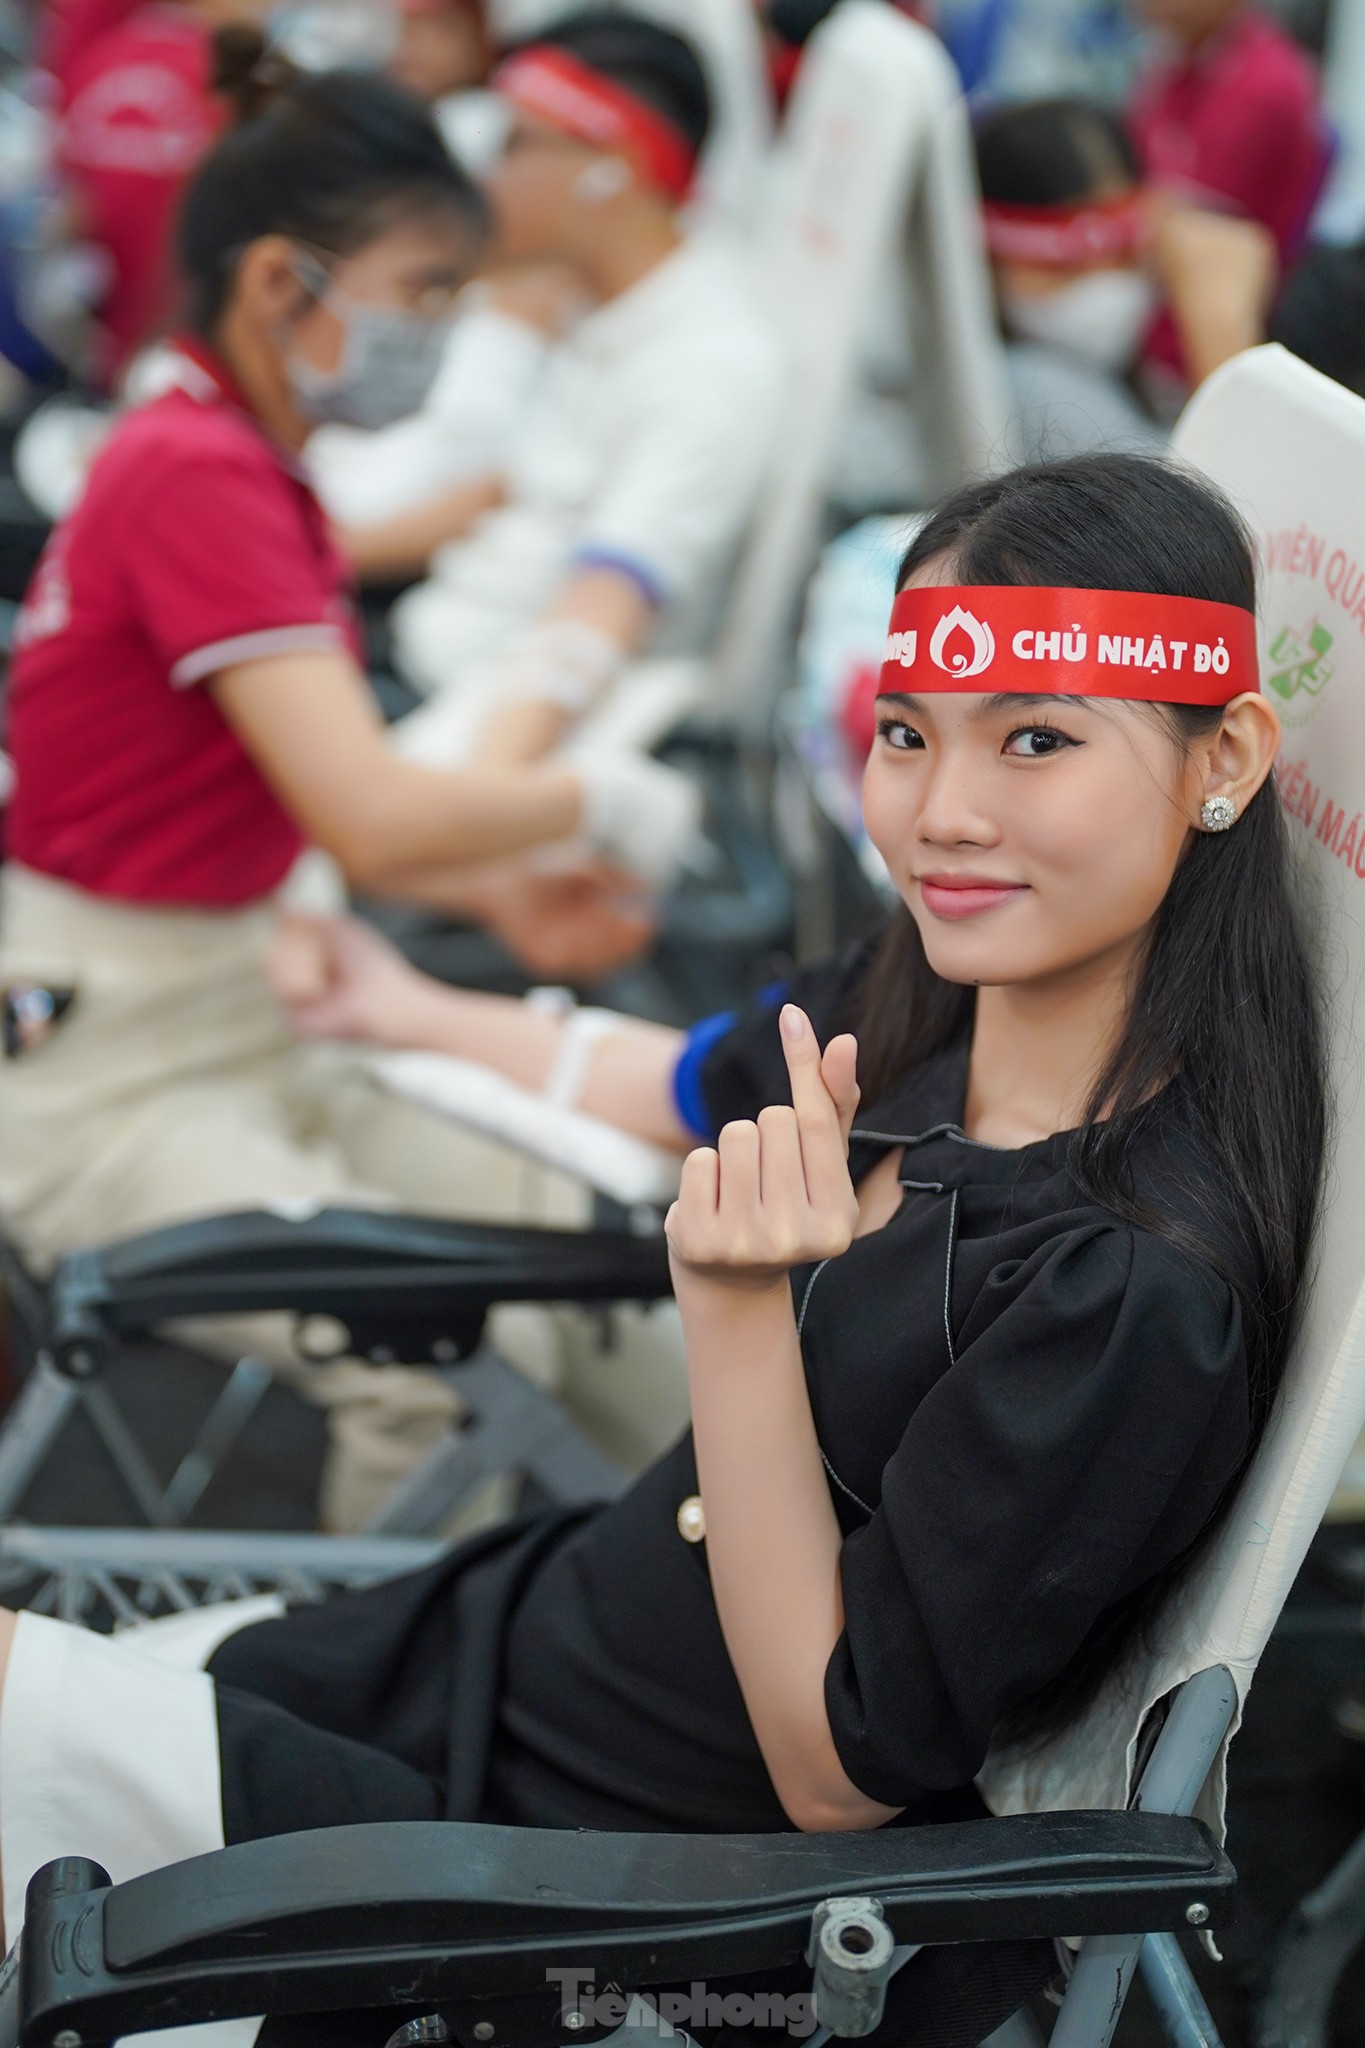 Sôi nổi ngày hội hiến máu Chủ nhật Đỏ tại trụ sở công ty Amway Việt Nam ảnh 6